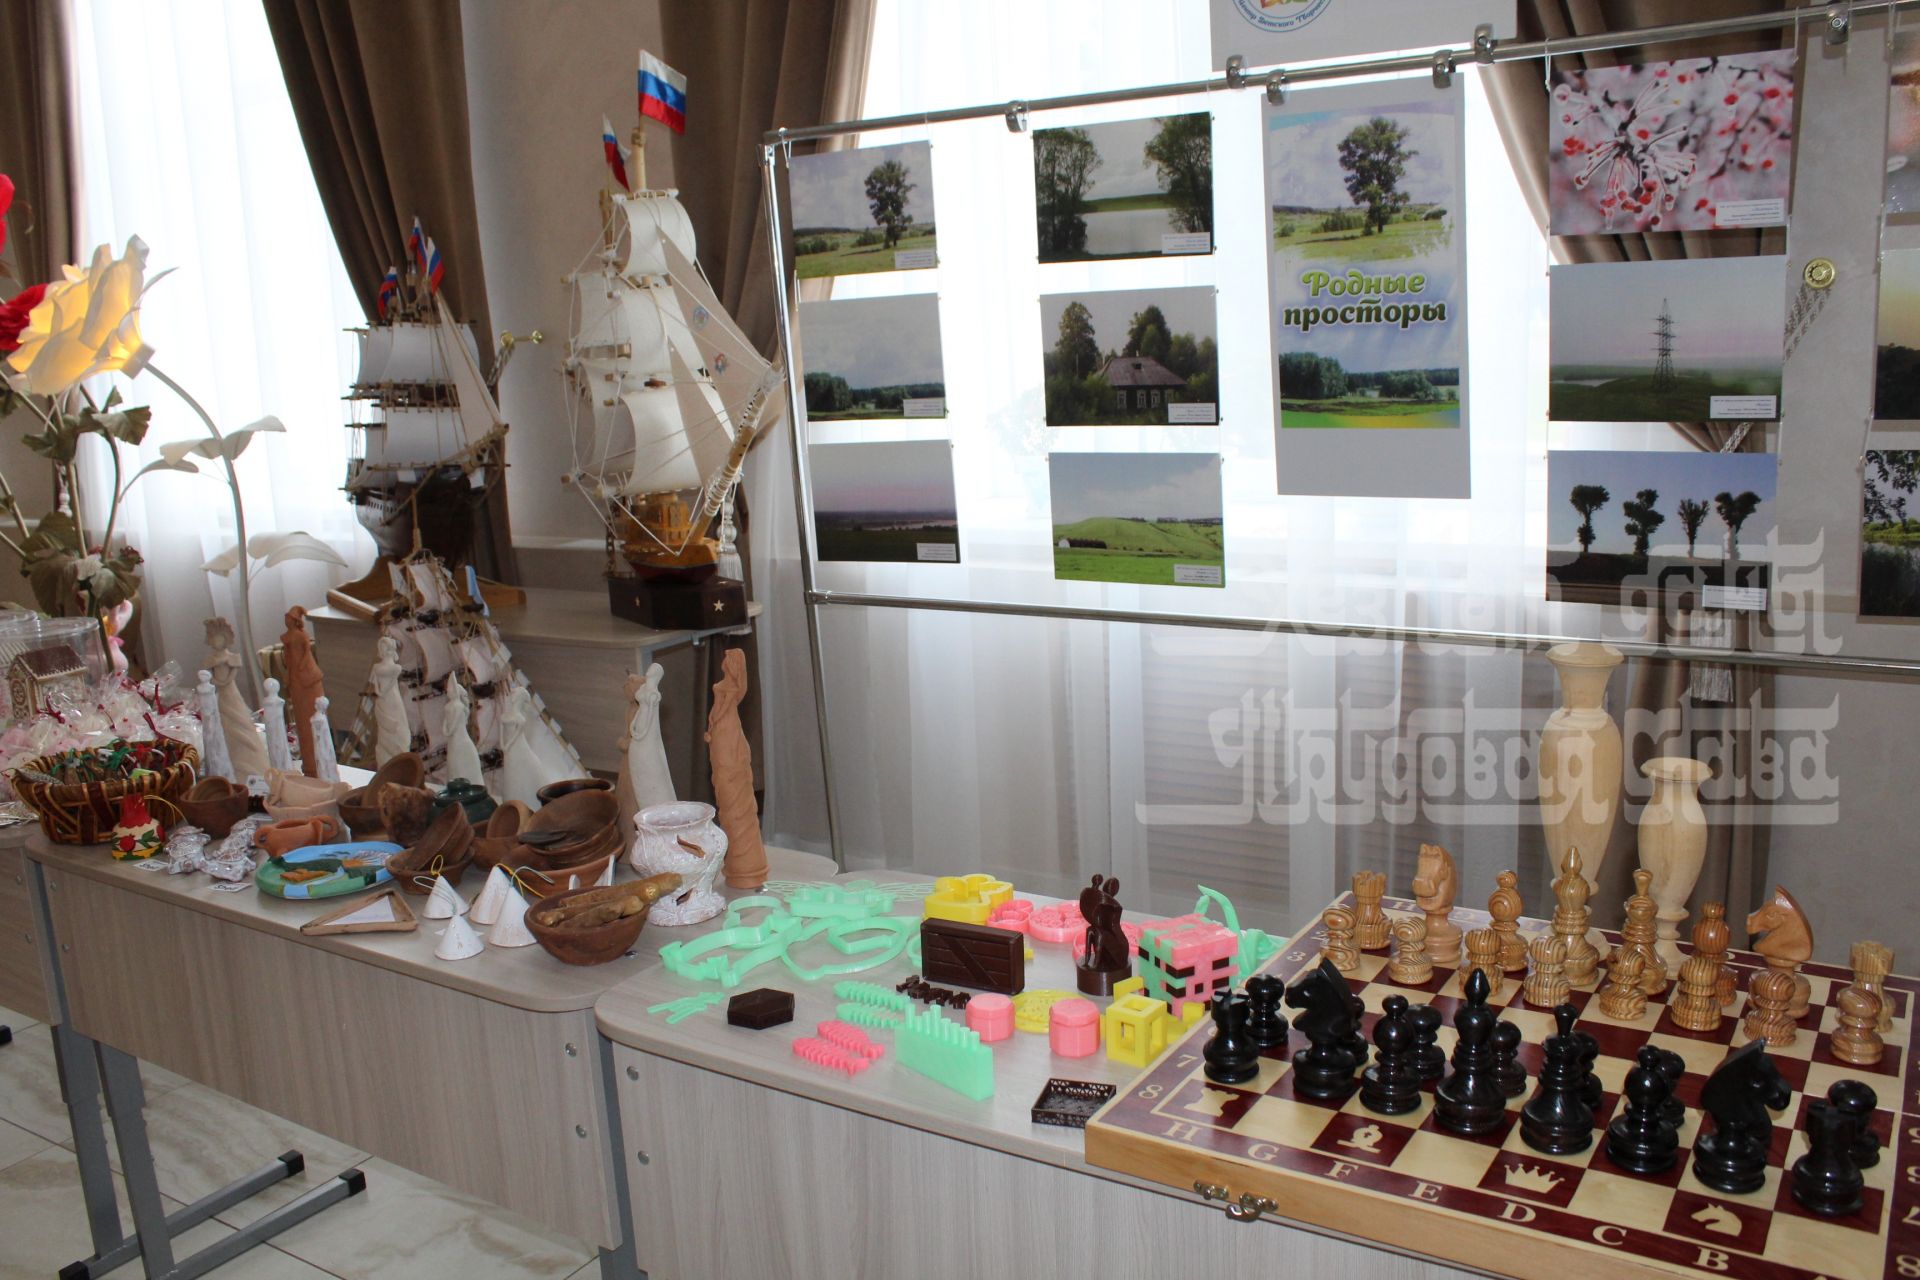 Фото: В Кукморе прошел праздник в рамках 100-летия системы дополнительного образования детей в России